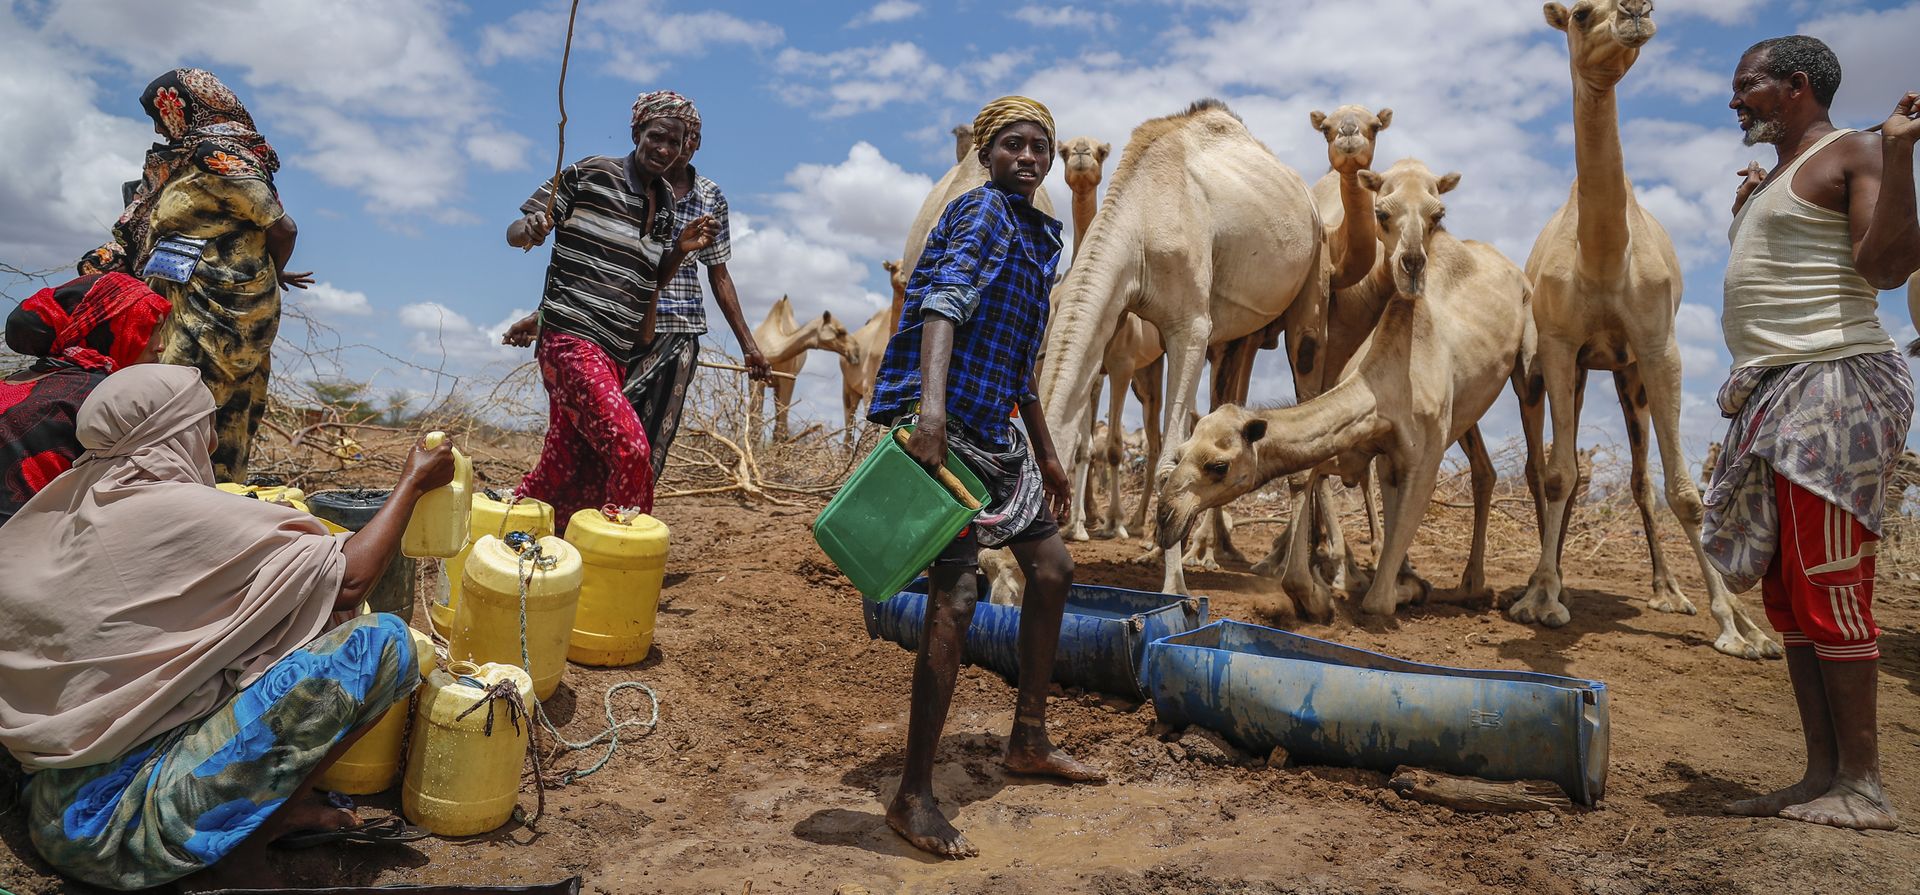 Pastores suministran agua de un pozo para dársela a sus camellos durante una sequía cerca de Kuruti, en el condado de Garissa, Kenia. La frecuencia y la duración de las sequías seguirán aumentando debido al cambio climático, con escasez de agua ya está afectando a miles de millones de personas en todo el mundo, advirtió Naciones Unidas en un informe el miércoles 11 de mayo de 2022.